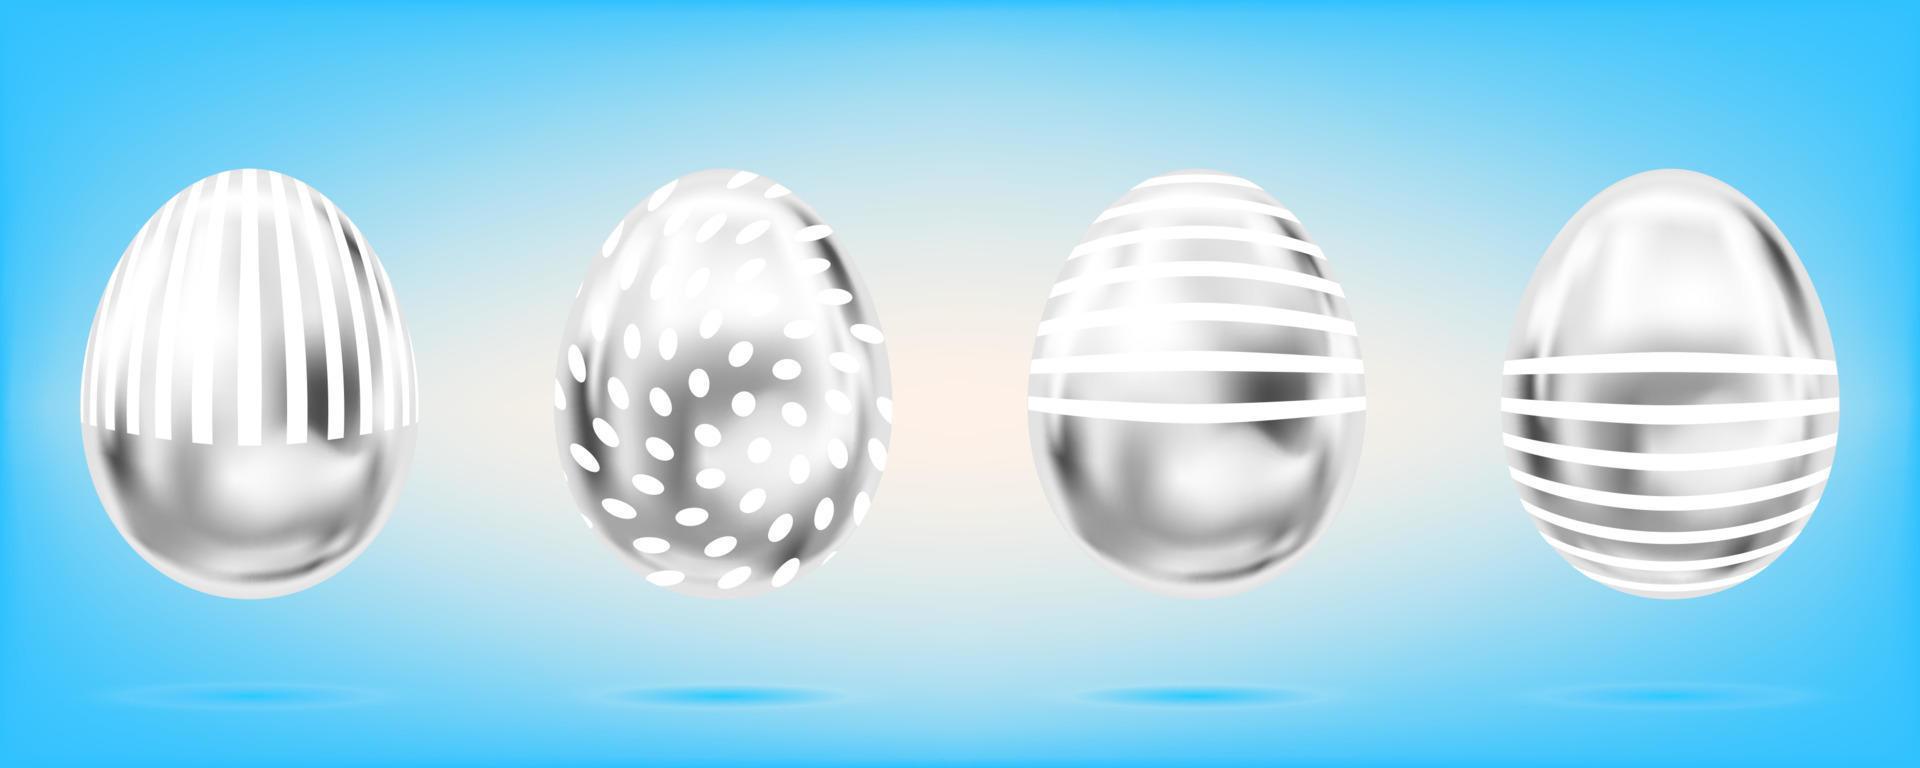 quatro ovos de prata sobre o fundo azul do céu. objetos isolados para a páscoa. listras e pontos ornamentados vetor